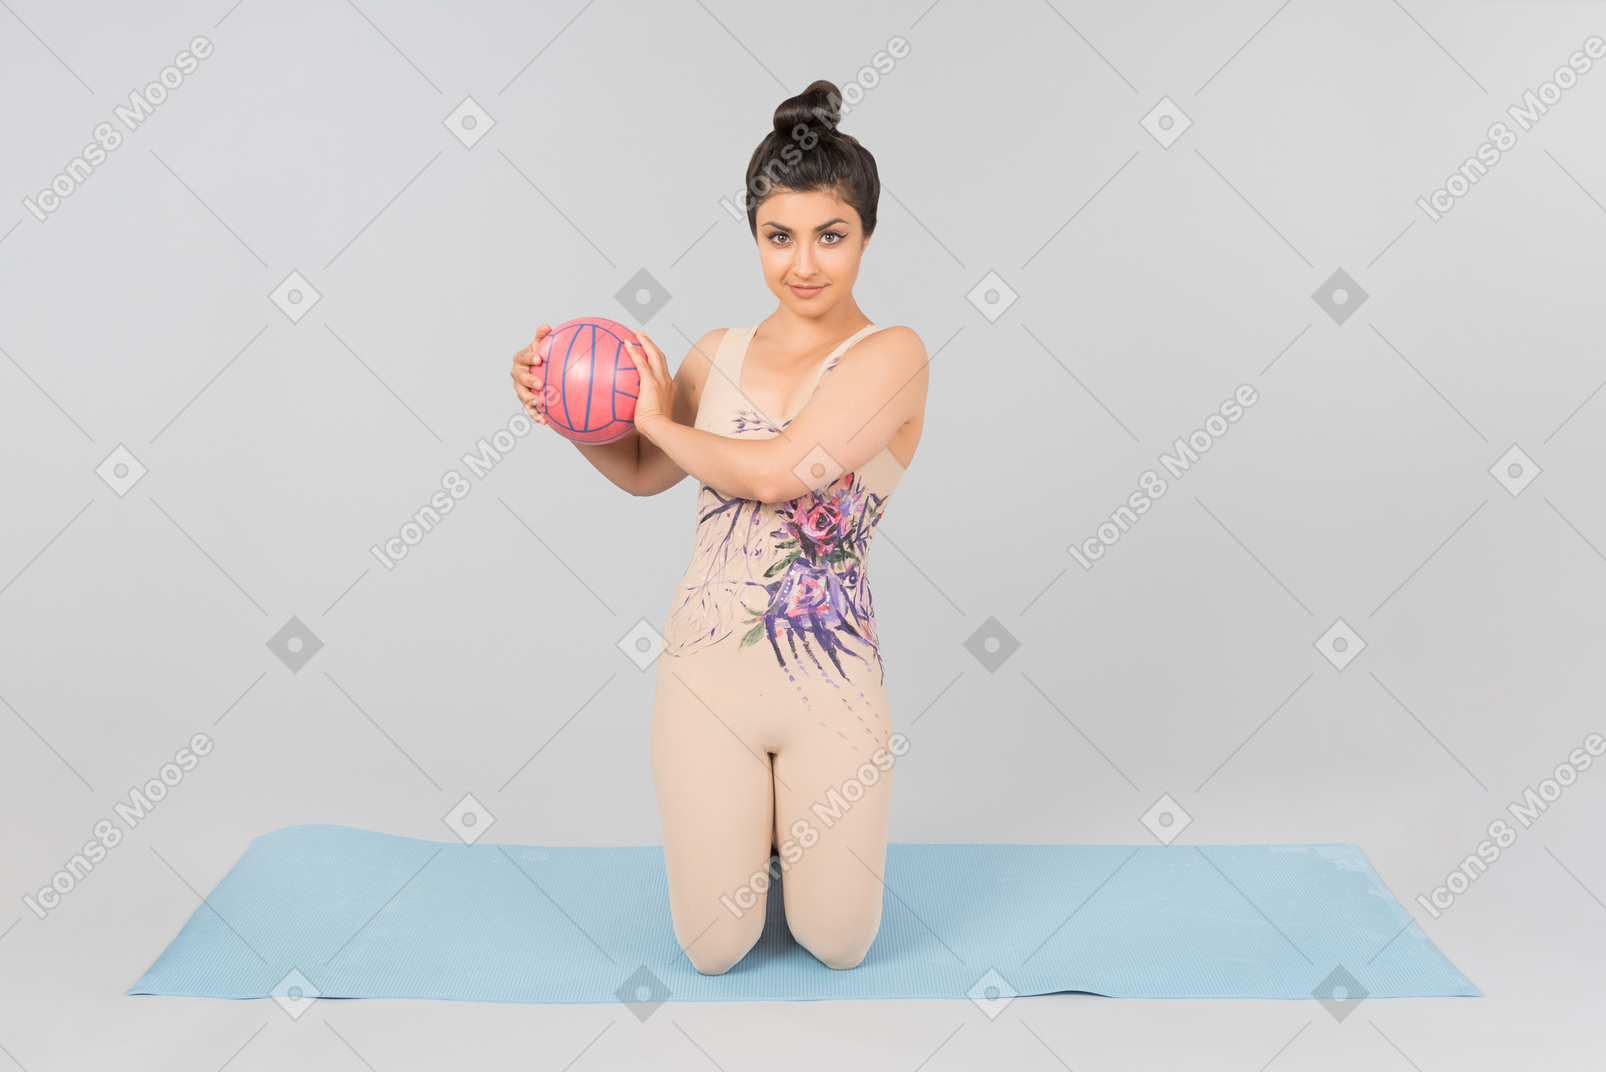 坐在瑜伽垫和拿着球用两只手的年轻印地安体操运动员